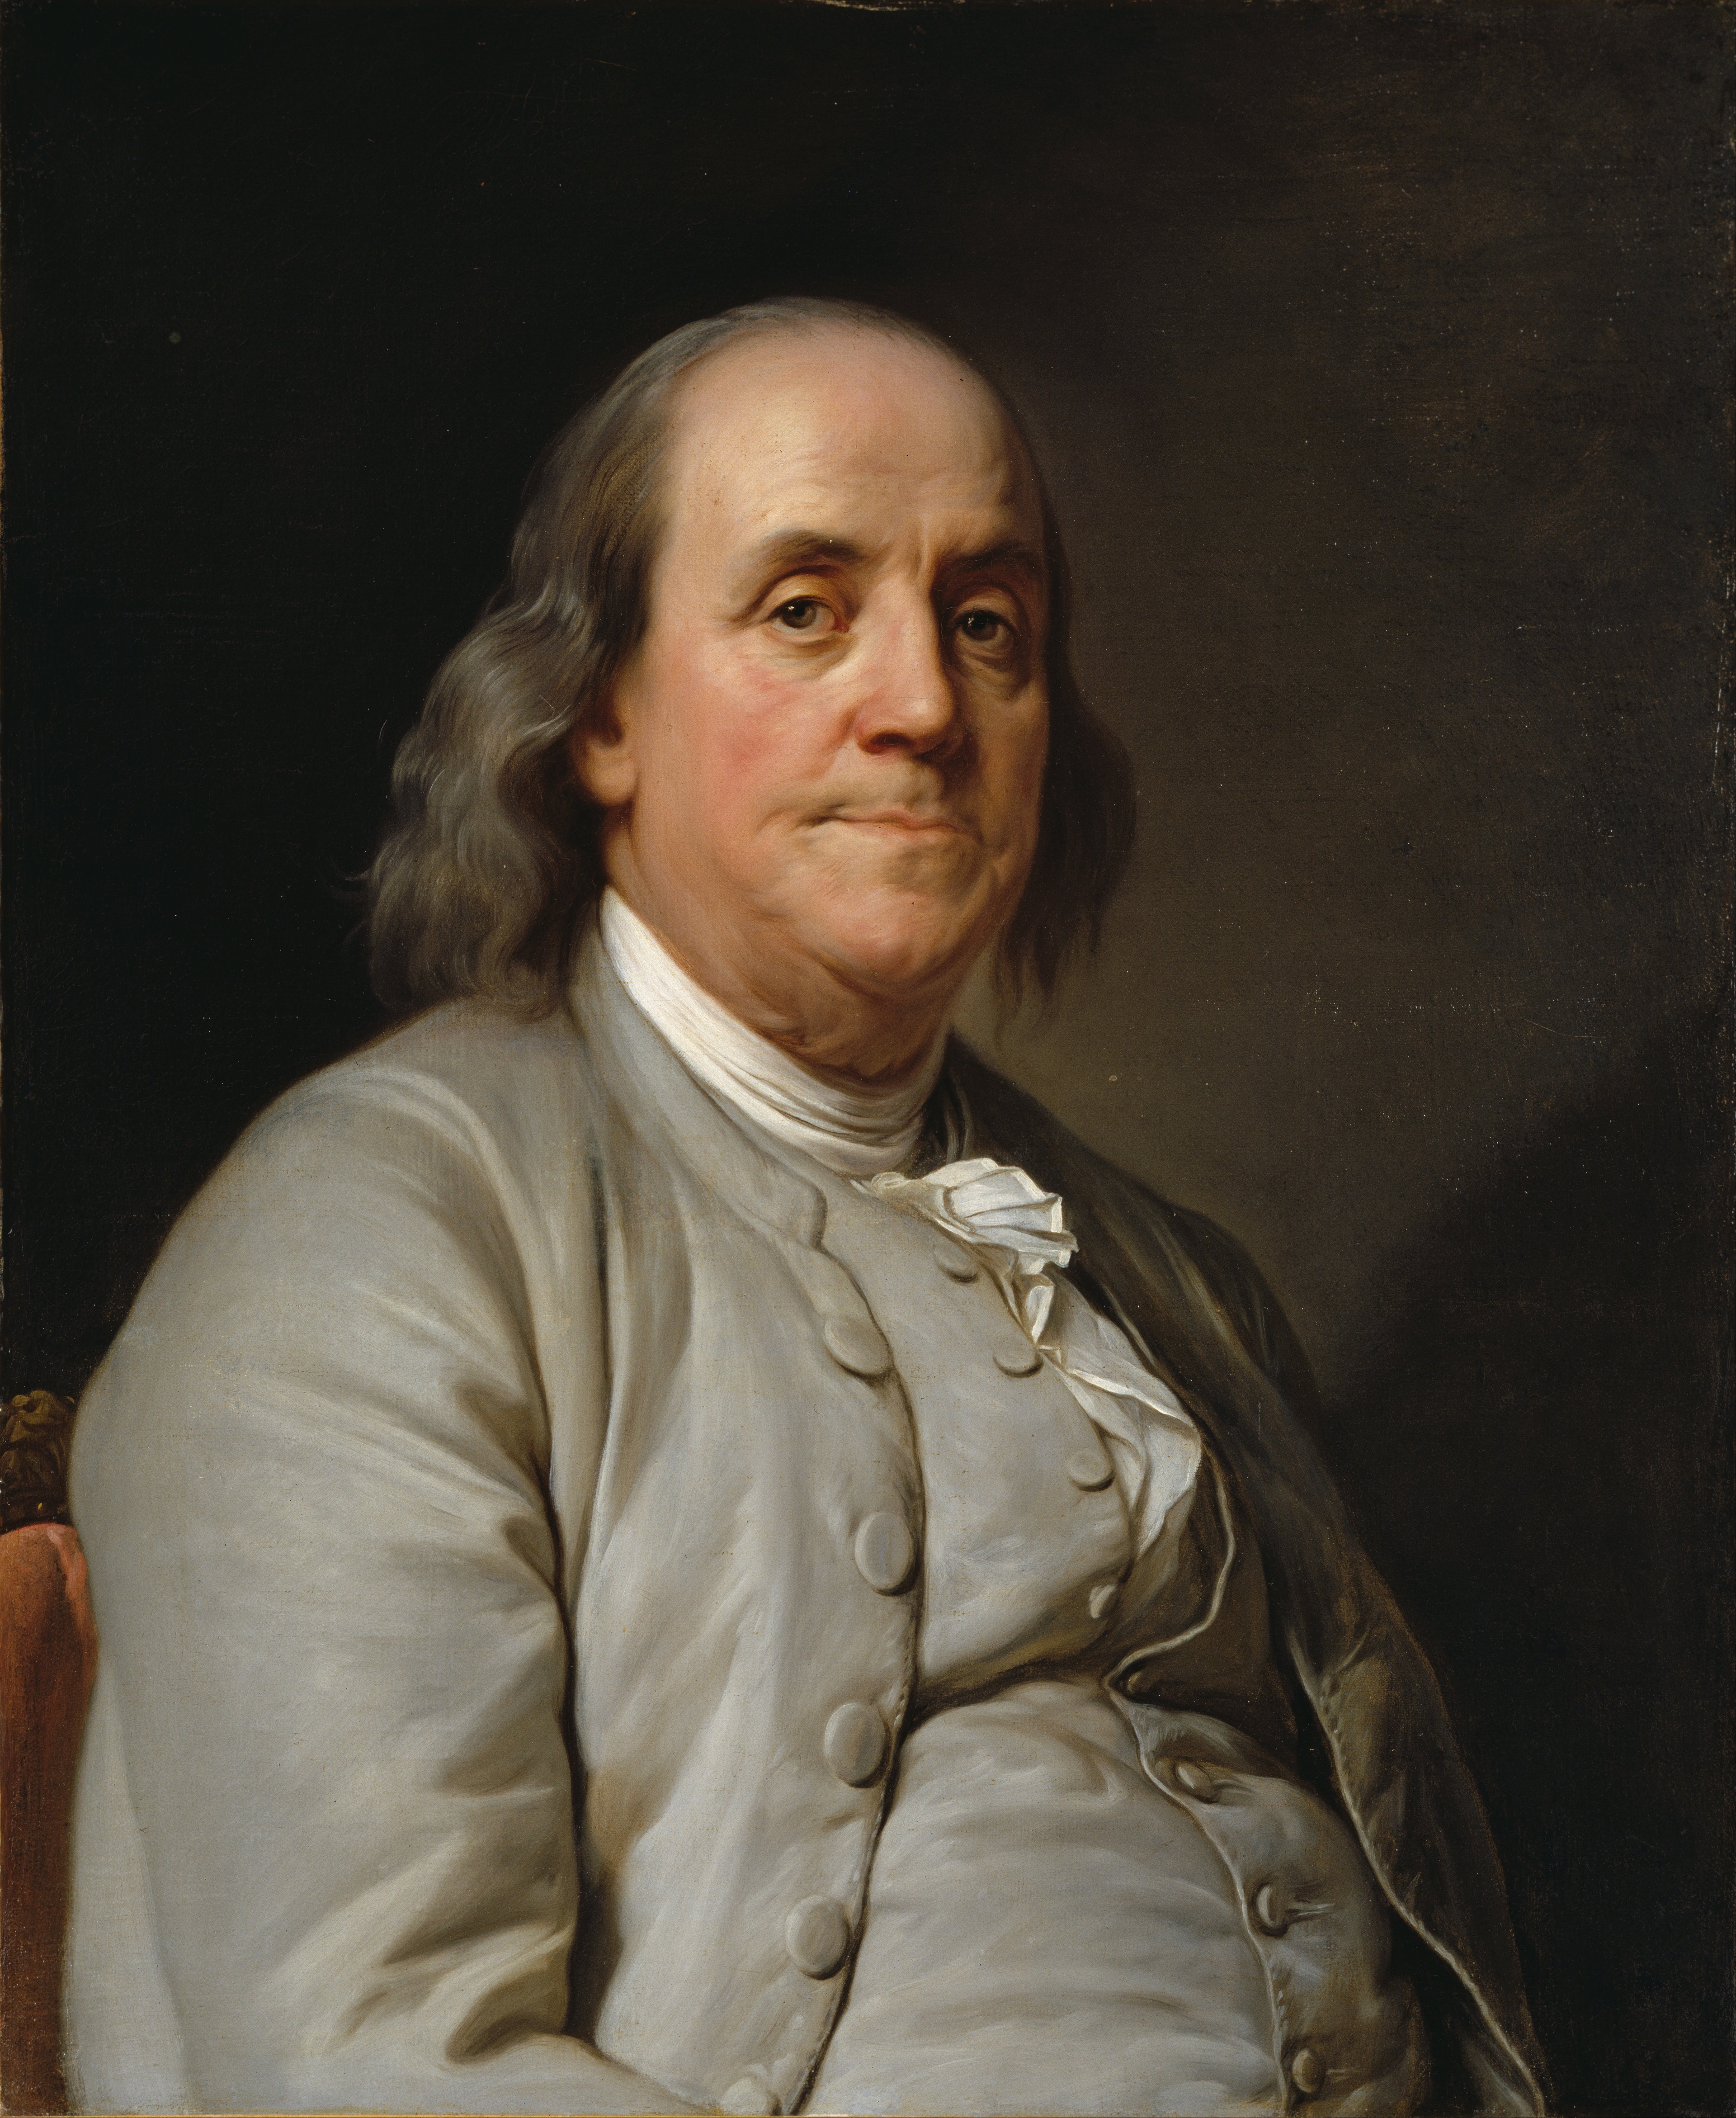 auteur Benjamin Franklin de la citation Ceux qui peuvent abandonner la liberté essentielle pour obtenir un peu de sécurité temporaire ne méritent ni liberté ni sécurité.